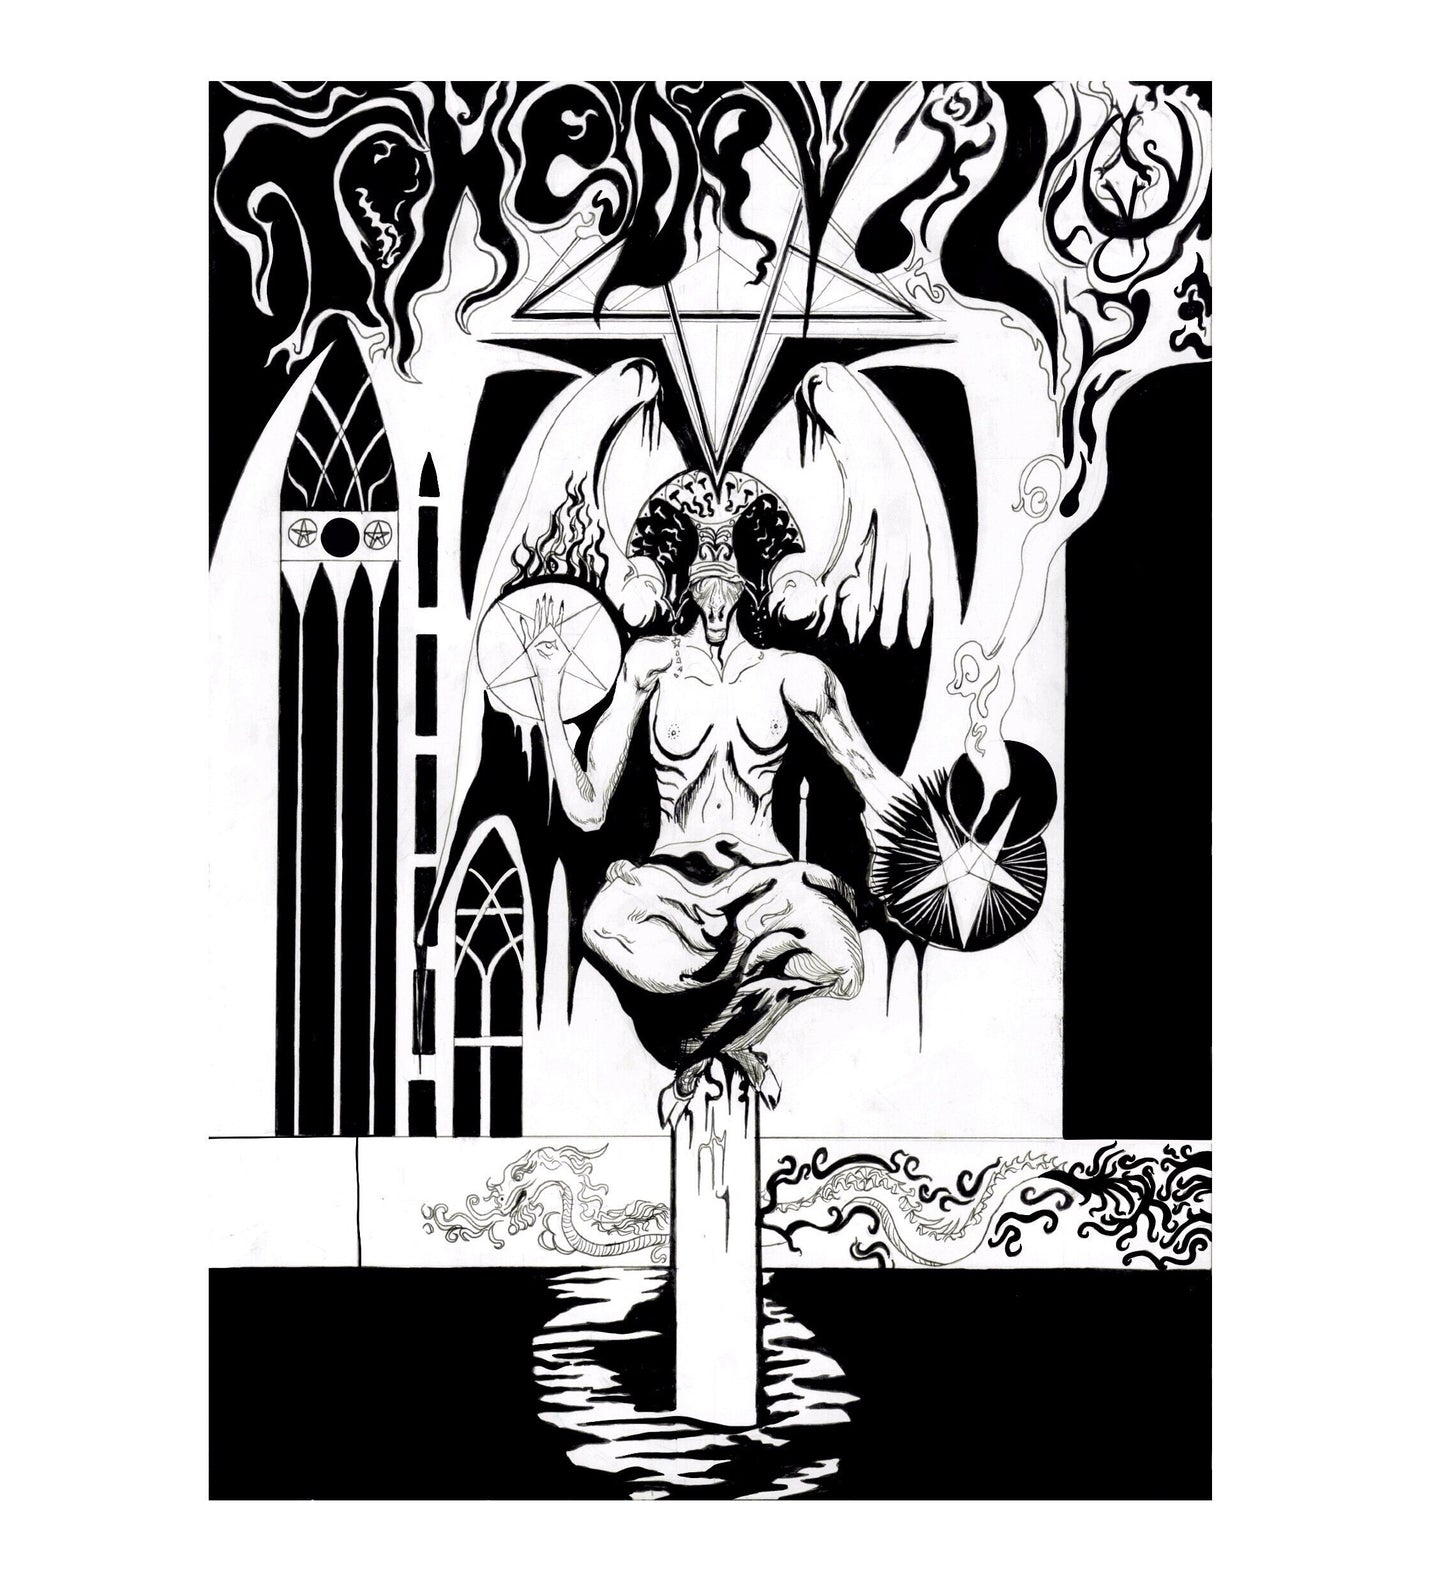 Le tarot du diable, stylo psychédélique et impression Baphomet à l'encre, oeuvre occulte ésotérique par Hierophant Prints